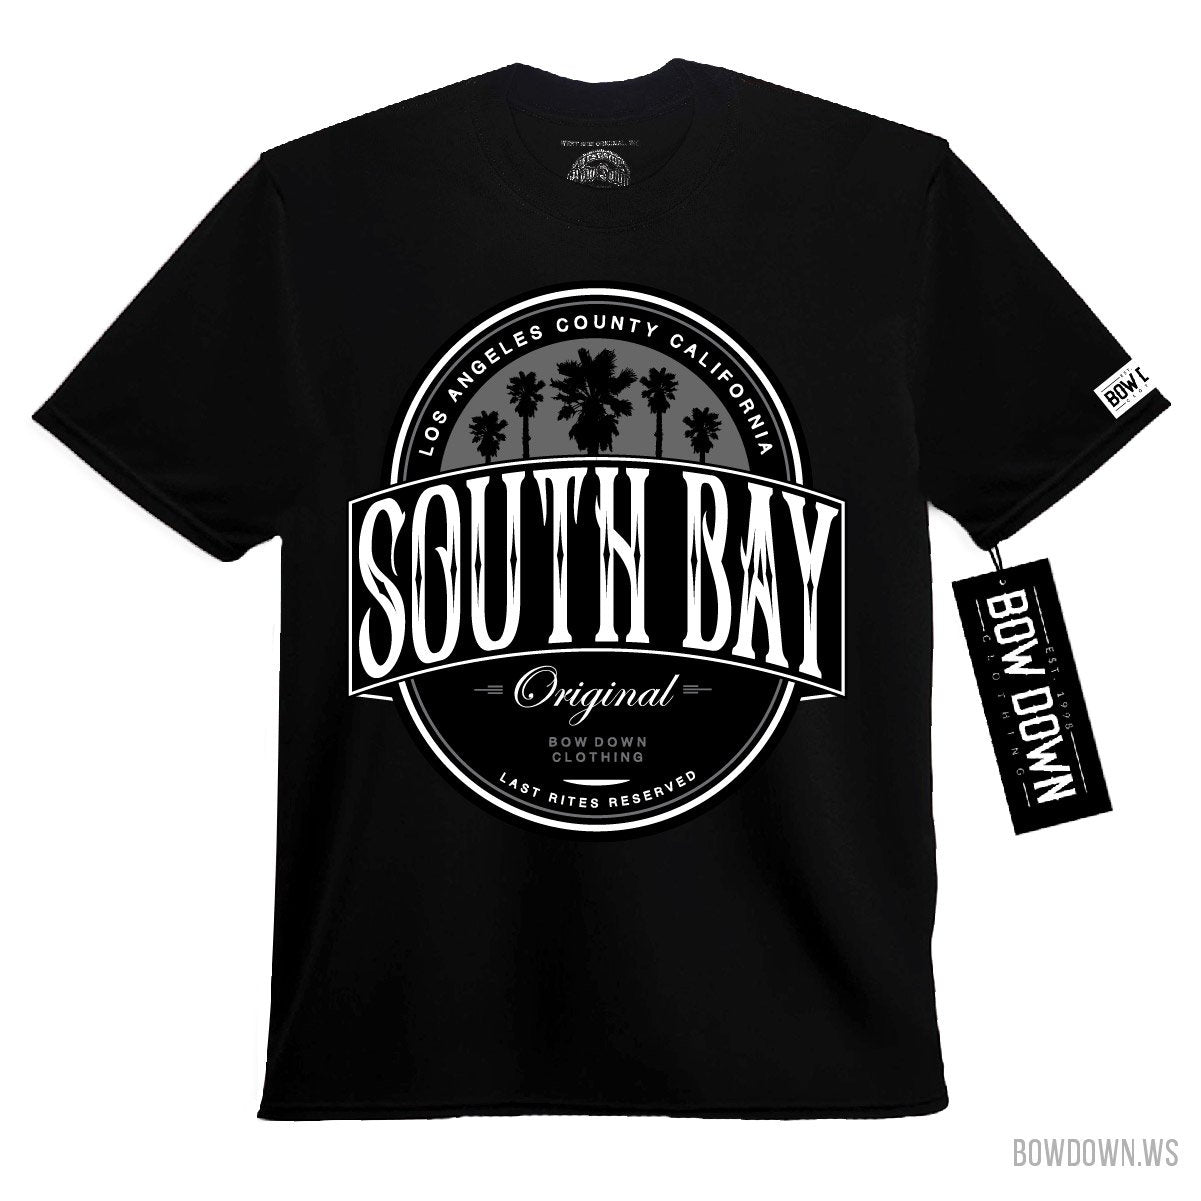 South Bay Seal 2